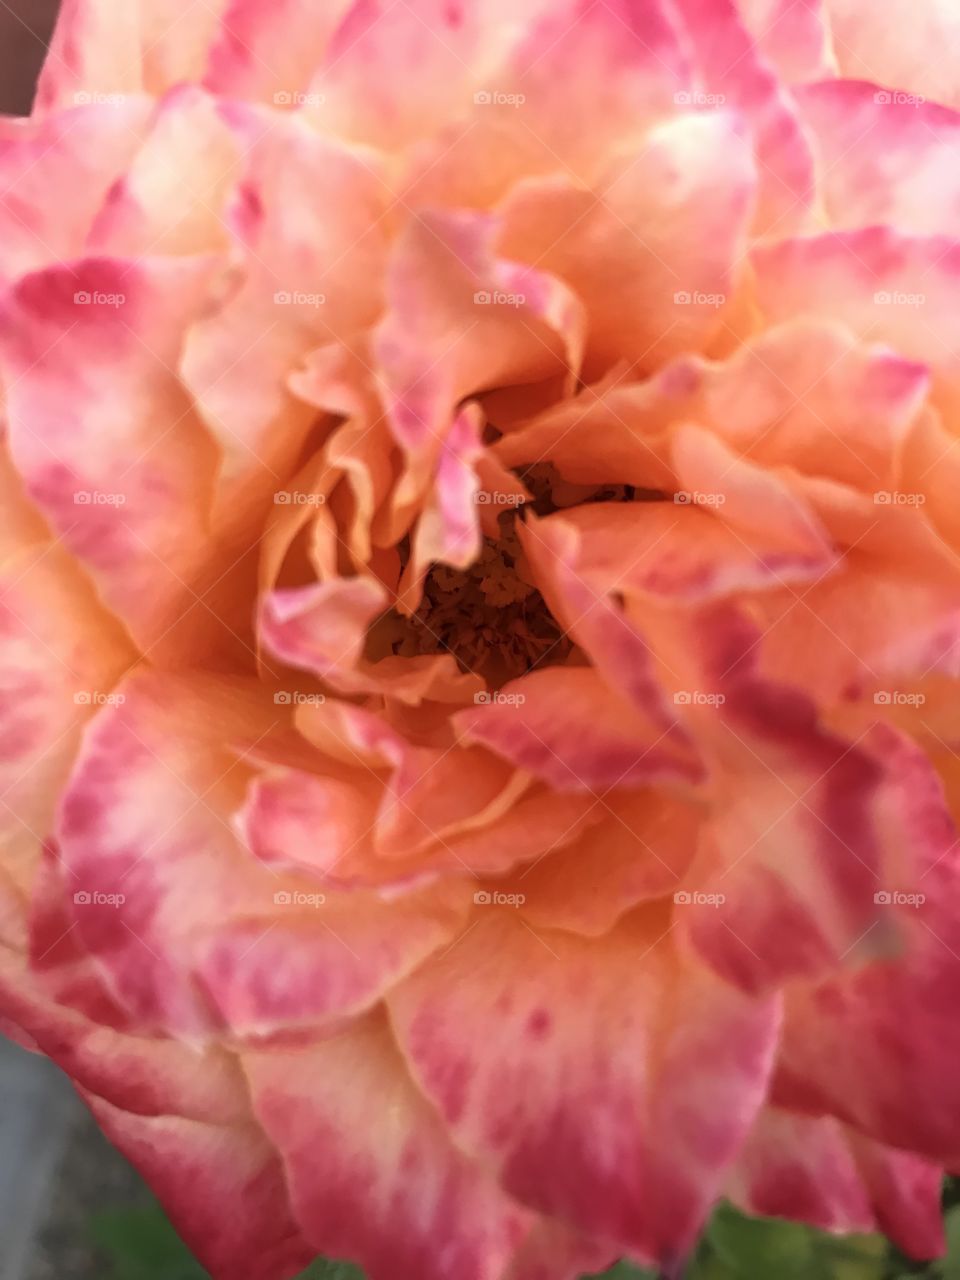 Garden rose close up peony blush pink orange